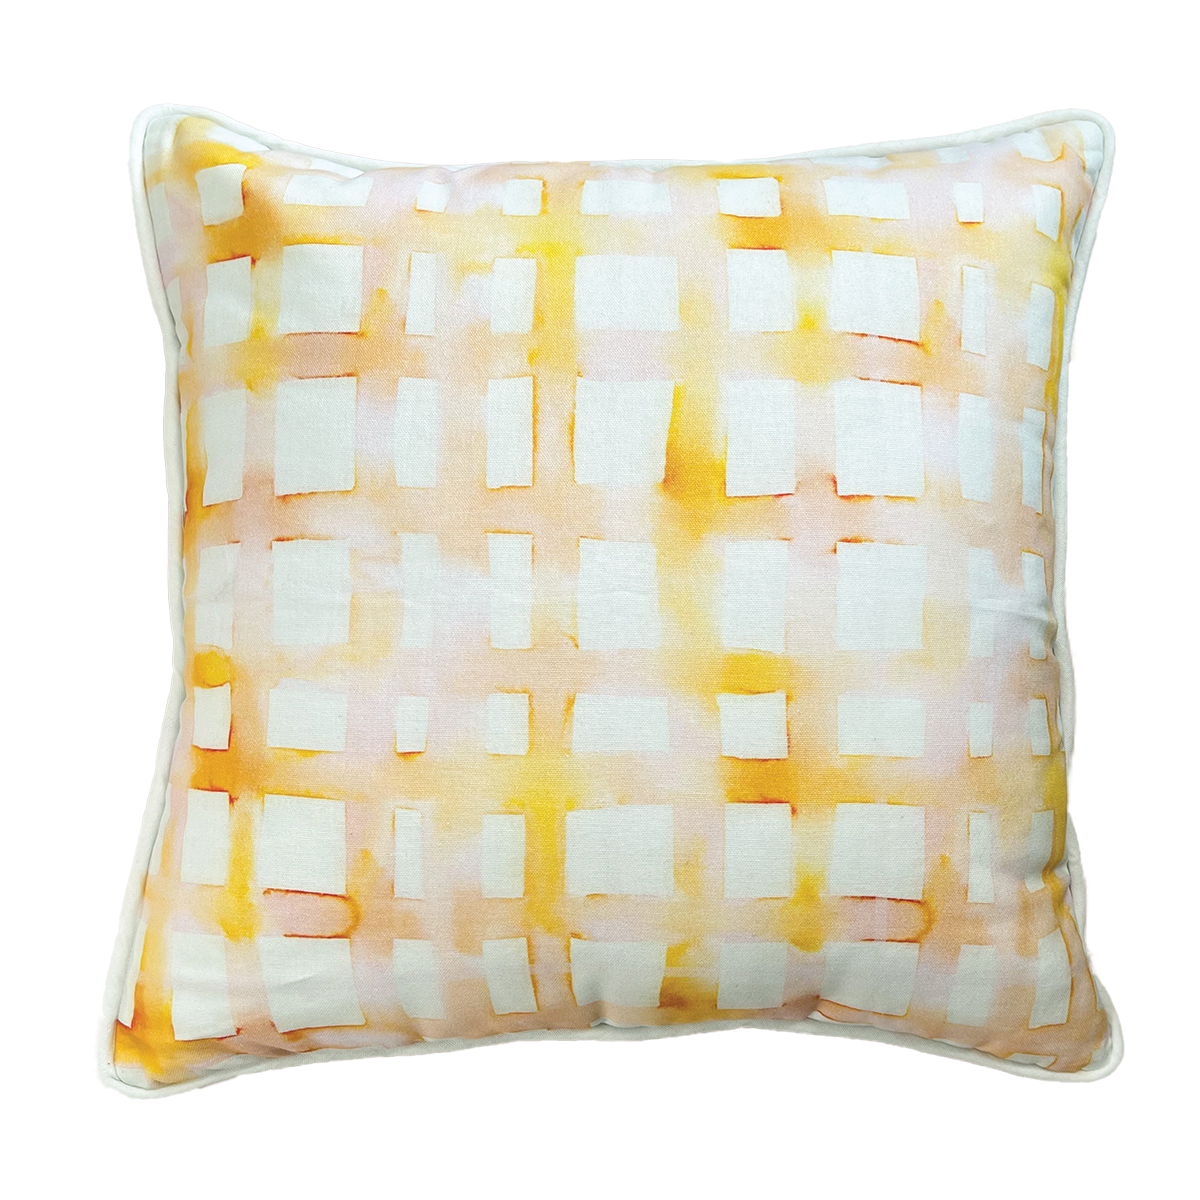 WHOLESALE: Watercolor Plaid Citrus Pillow Covers Bulk